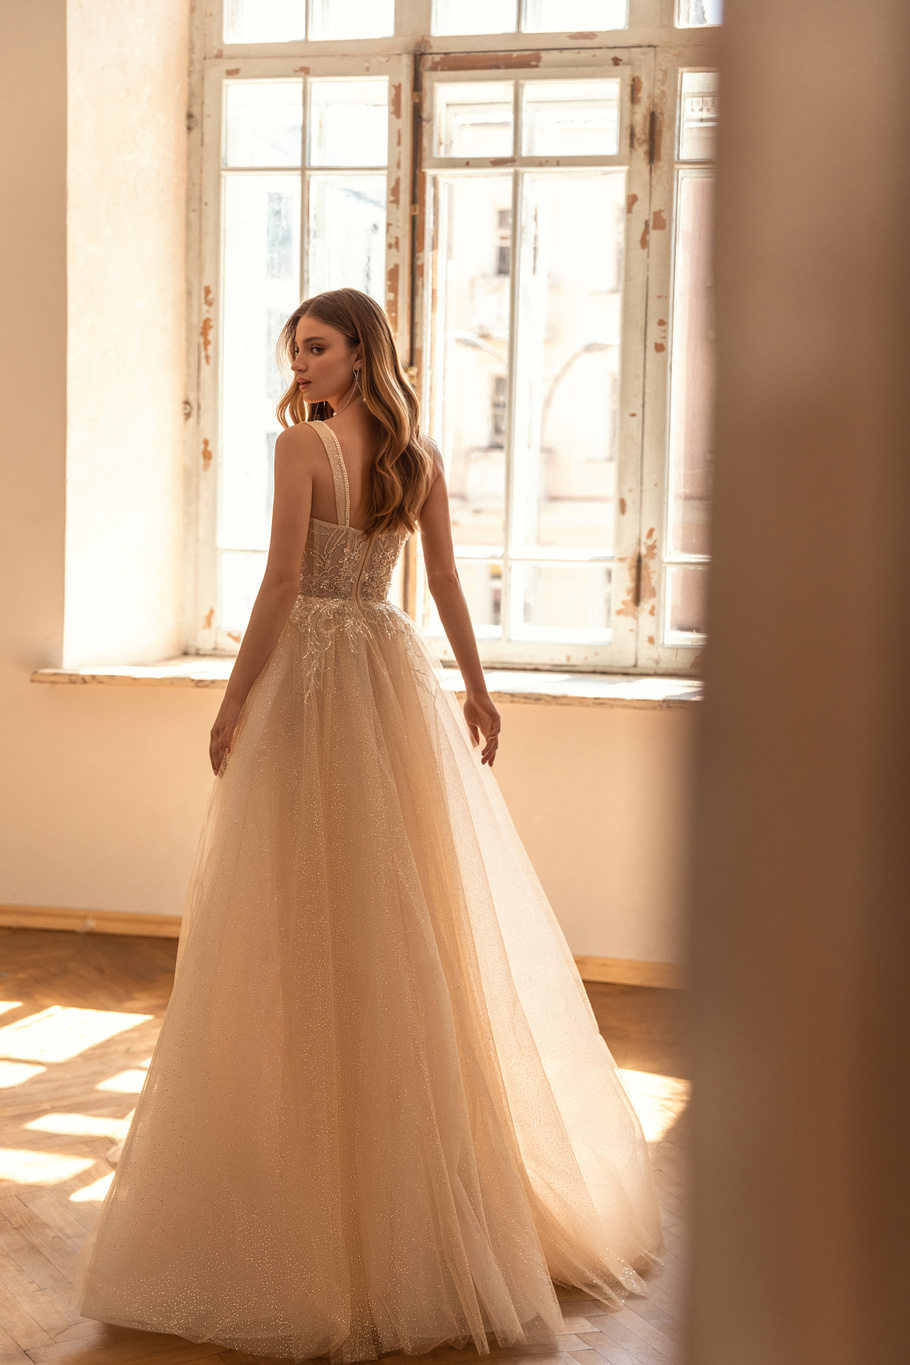 Купить свадебное платье «Карла» Евы Лендел из коллекции 2022 в «Мэри Трюфель»